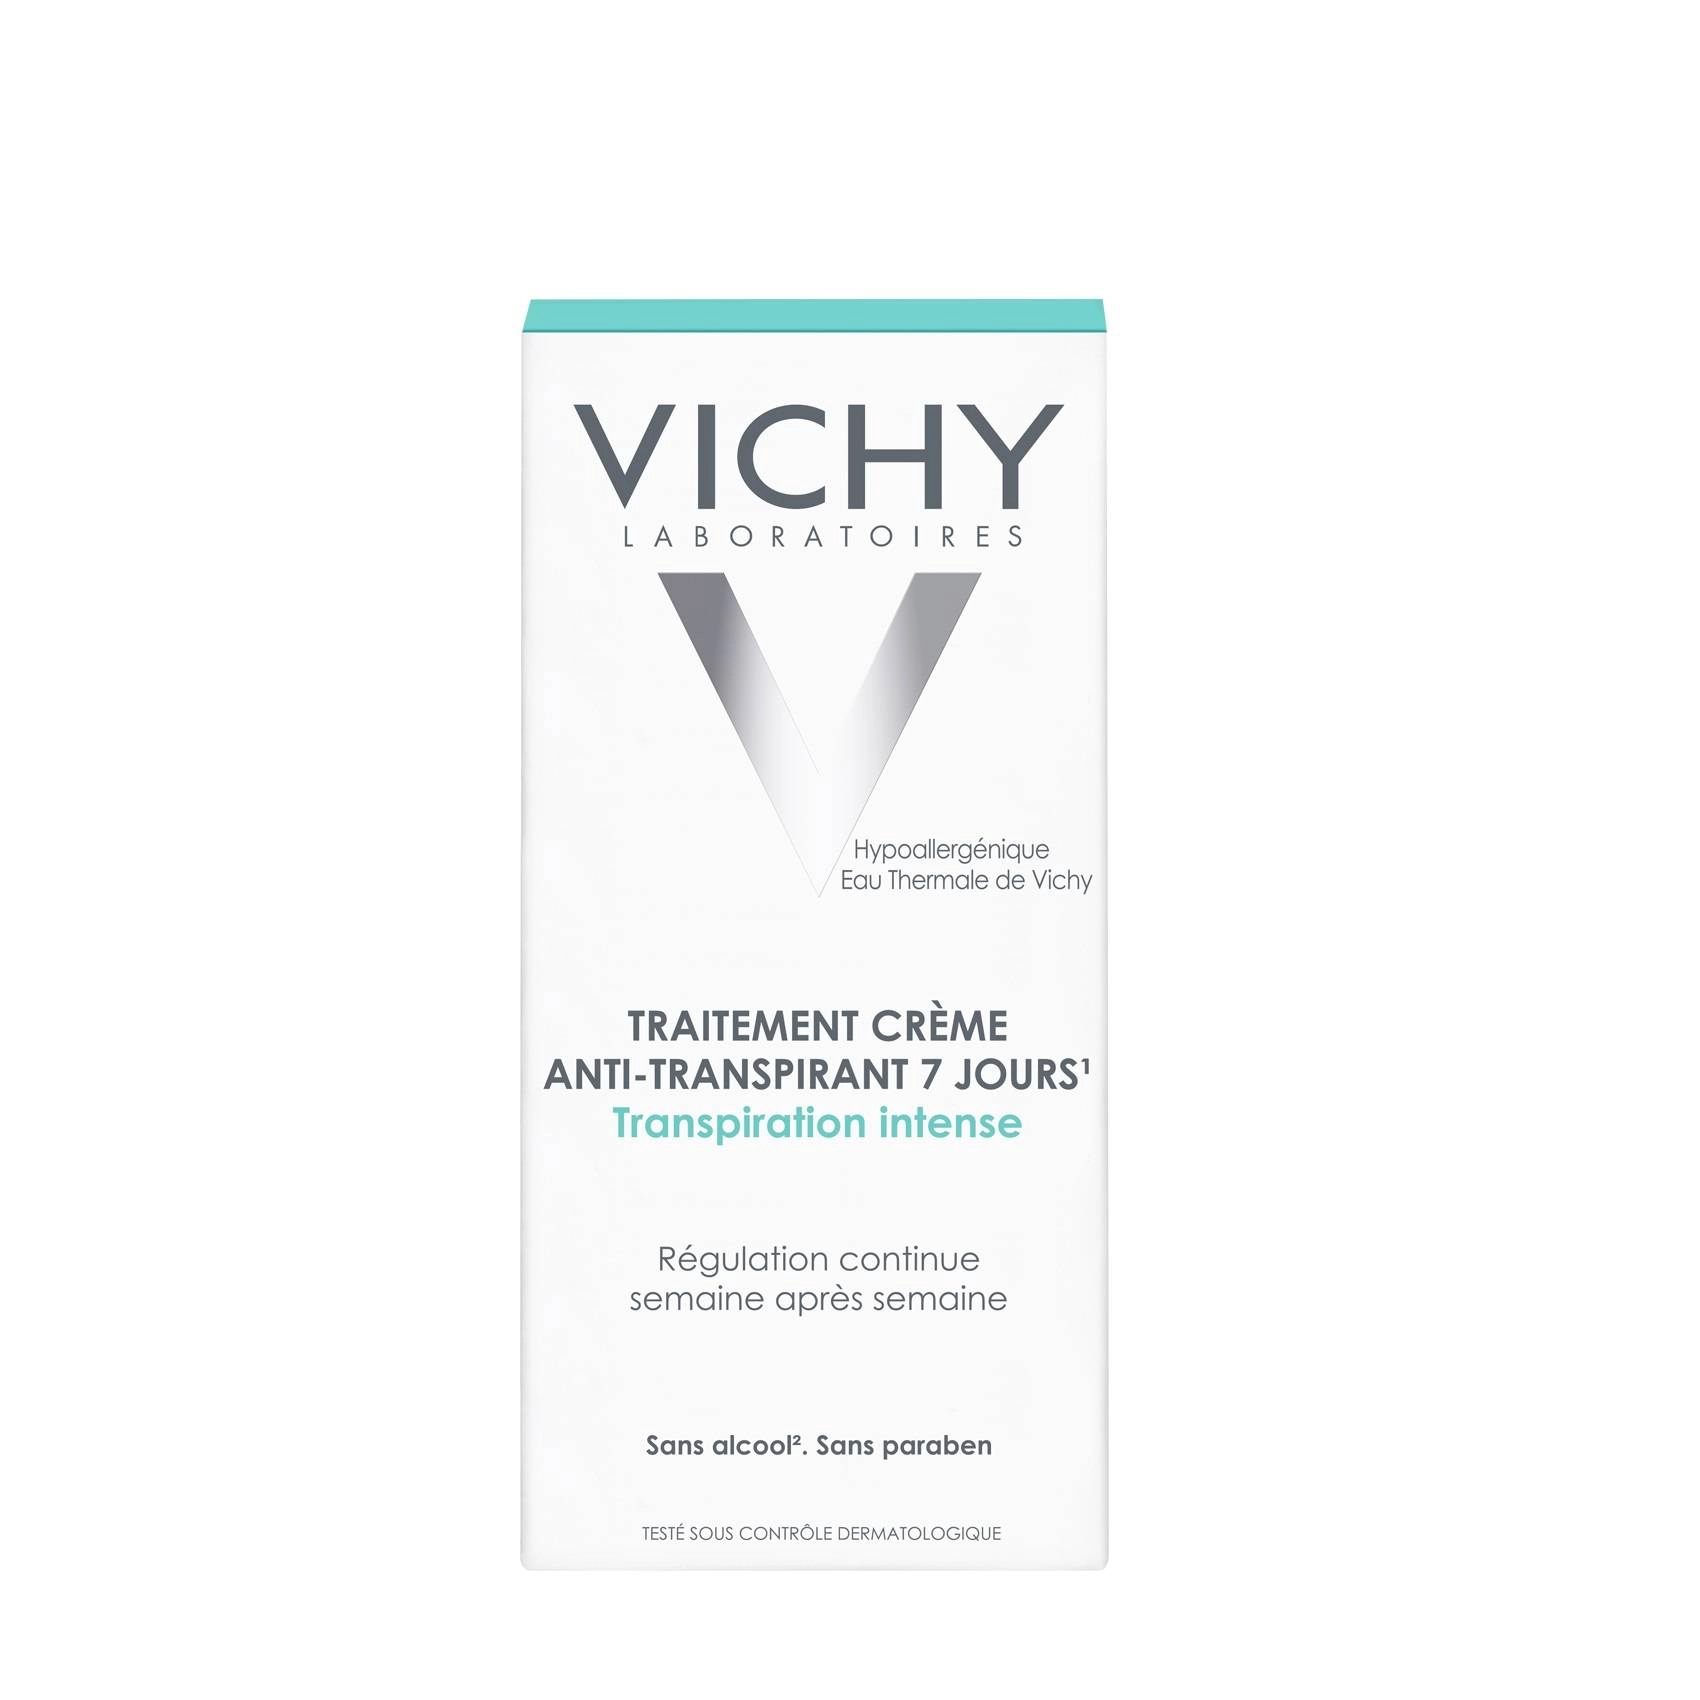 inzet Verplicht Eenheid Vichy Deodorant Anti-transpiratie crème 7 dagen 30ml bestellen bij bij  Mijnhuidonline